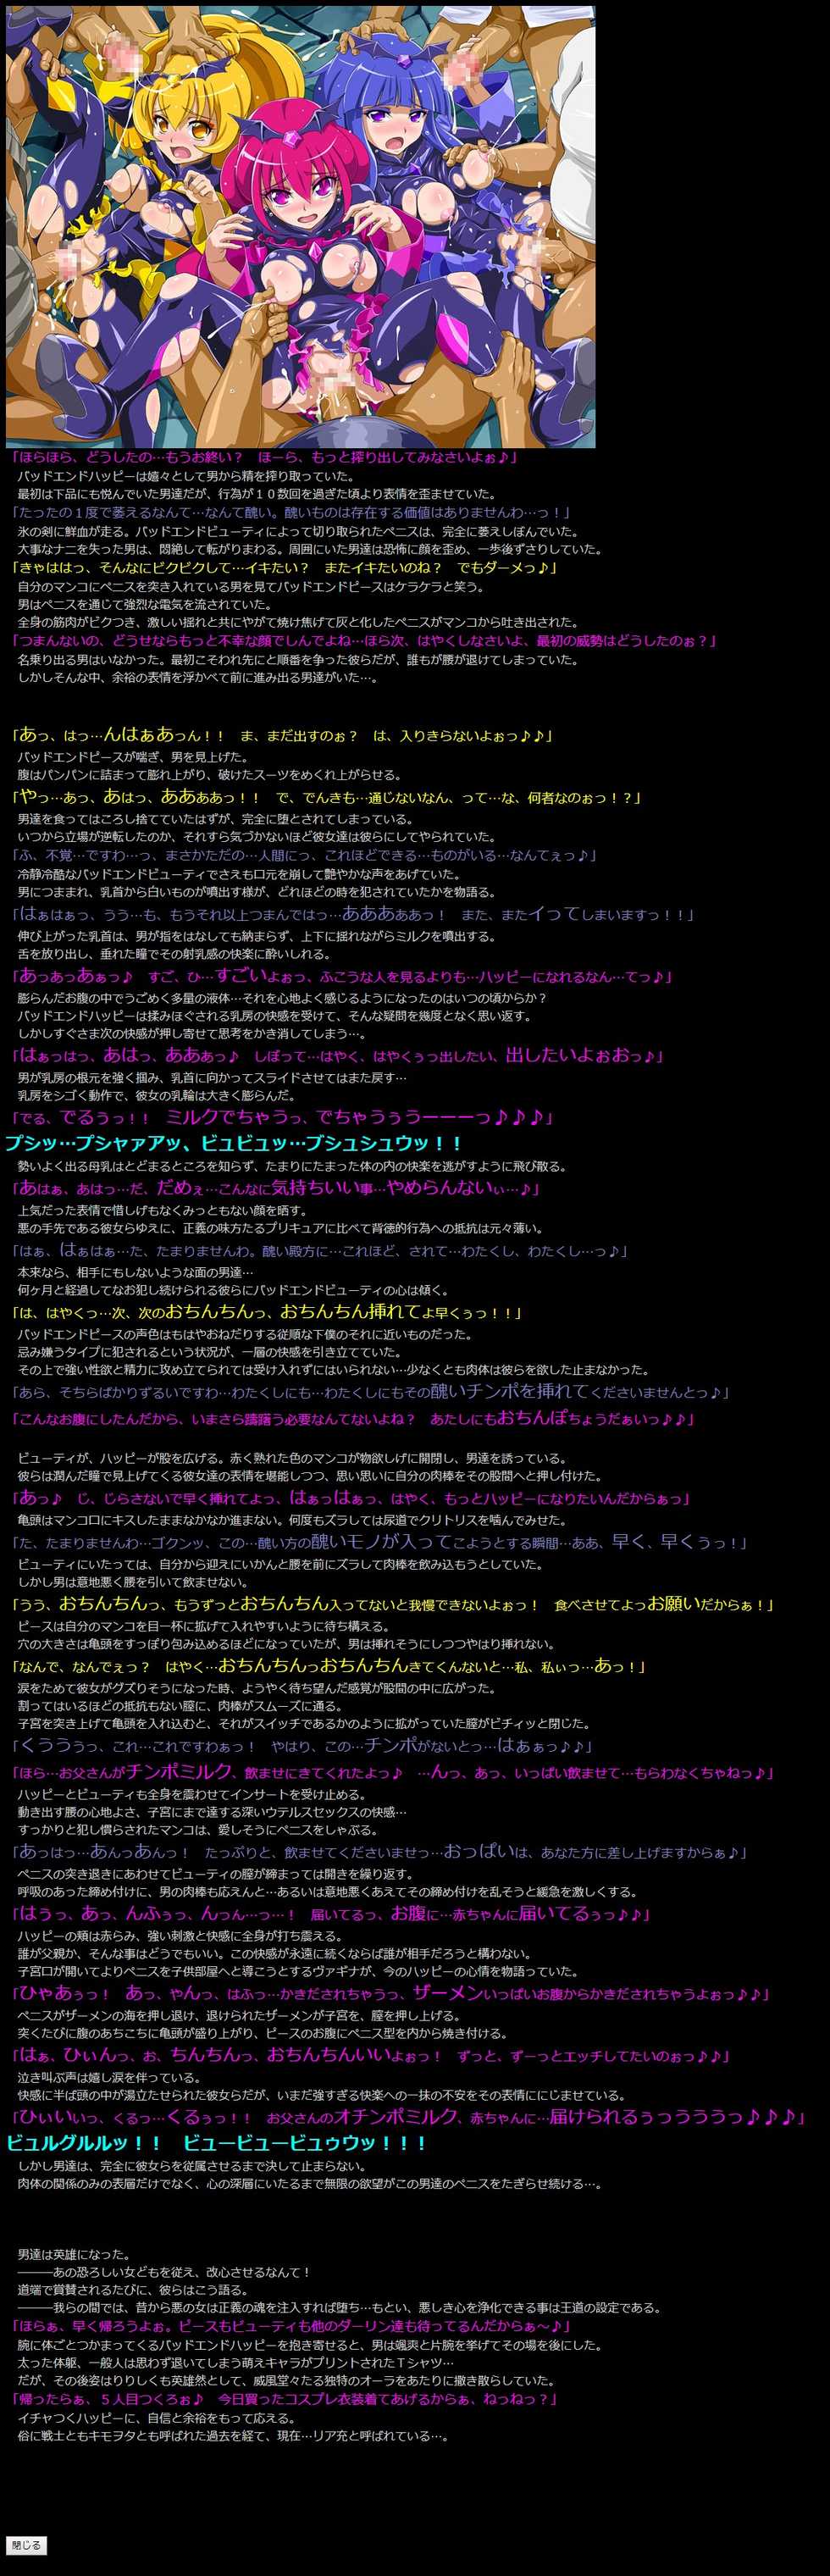 (SC58) [LolitaChannel (Arigase Shinji)] Yuumei Chara Kannou Shousetsu CG Shuu No. 245!! Smile PreCure! 2 HaaHaa CG Shuu (Smile PreCure!) - Page 4